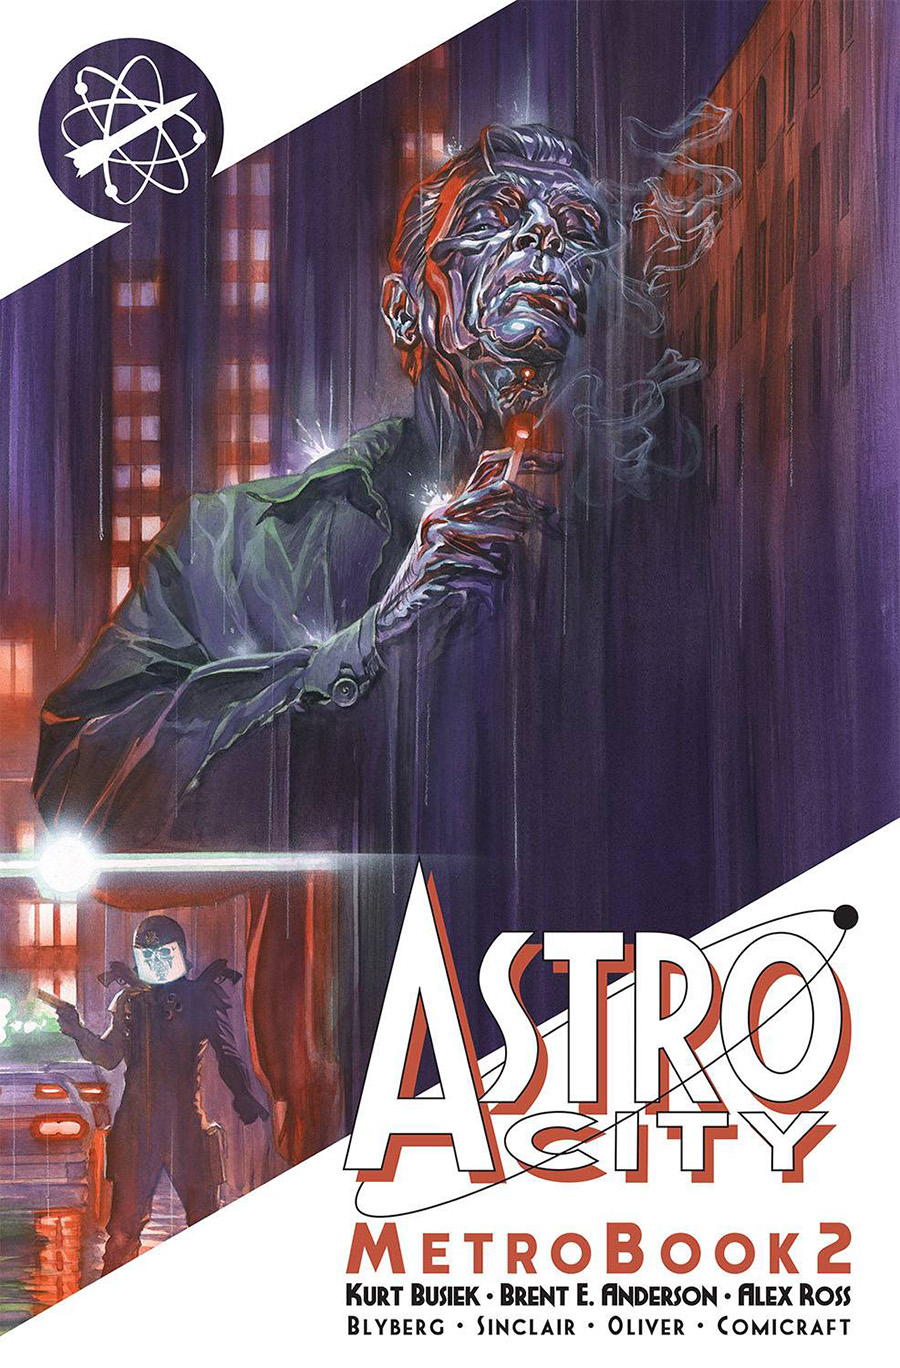 Astro City Metrobook Vol 2 TP